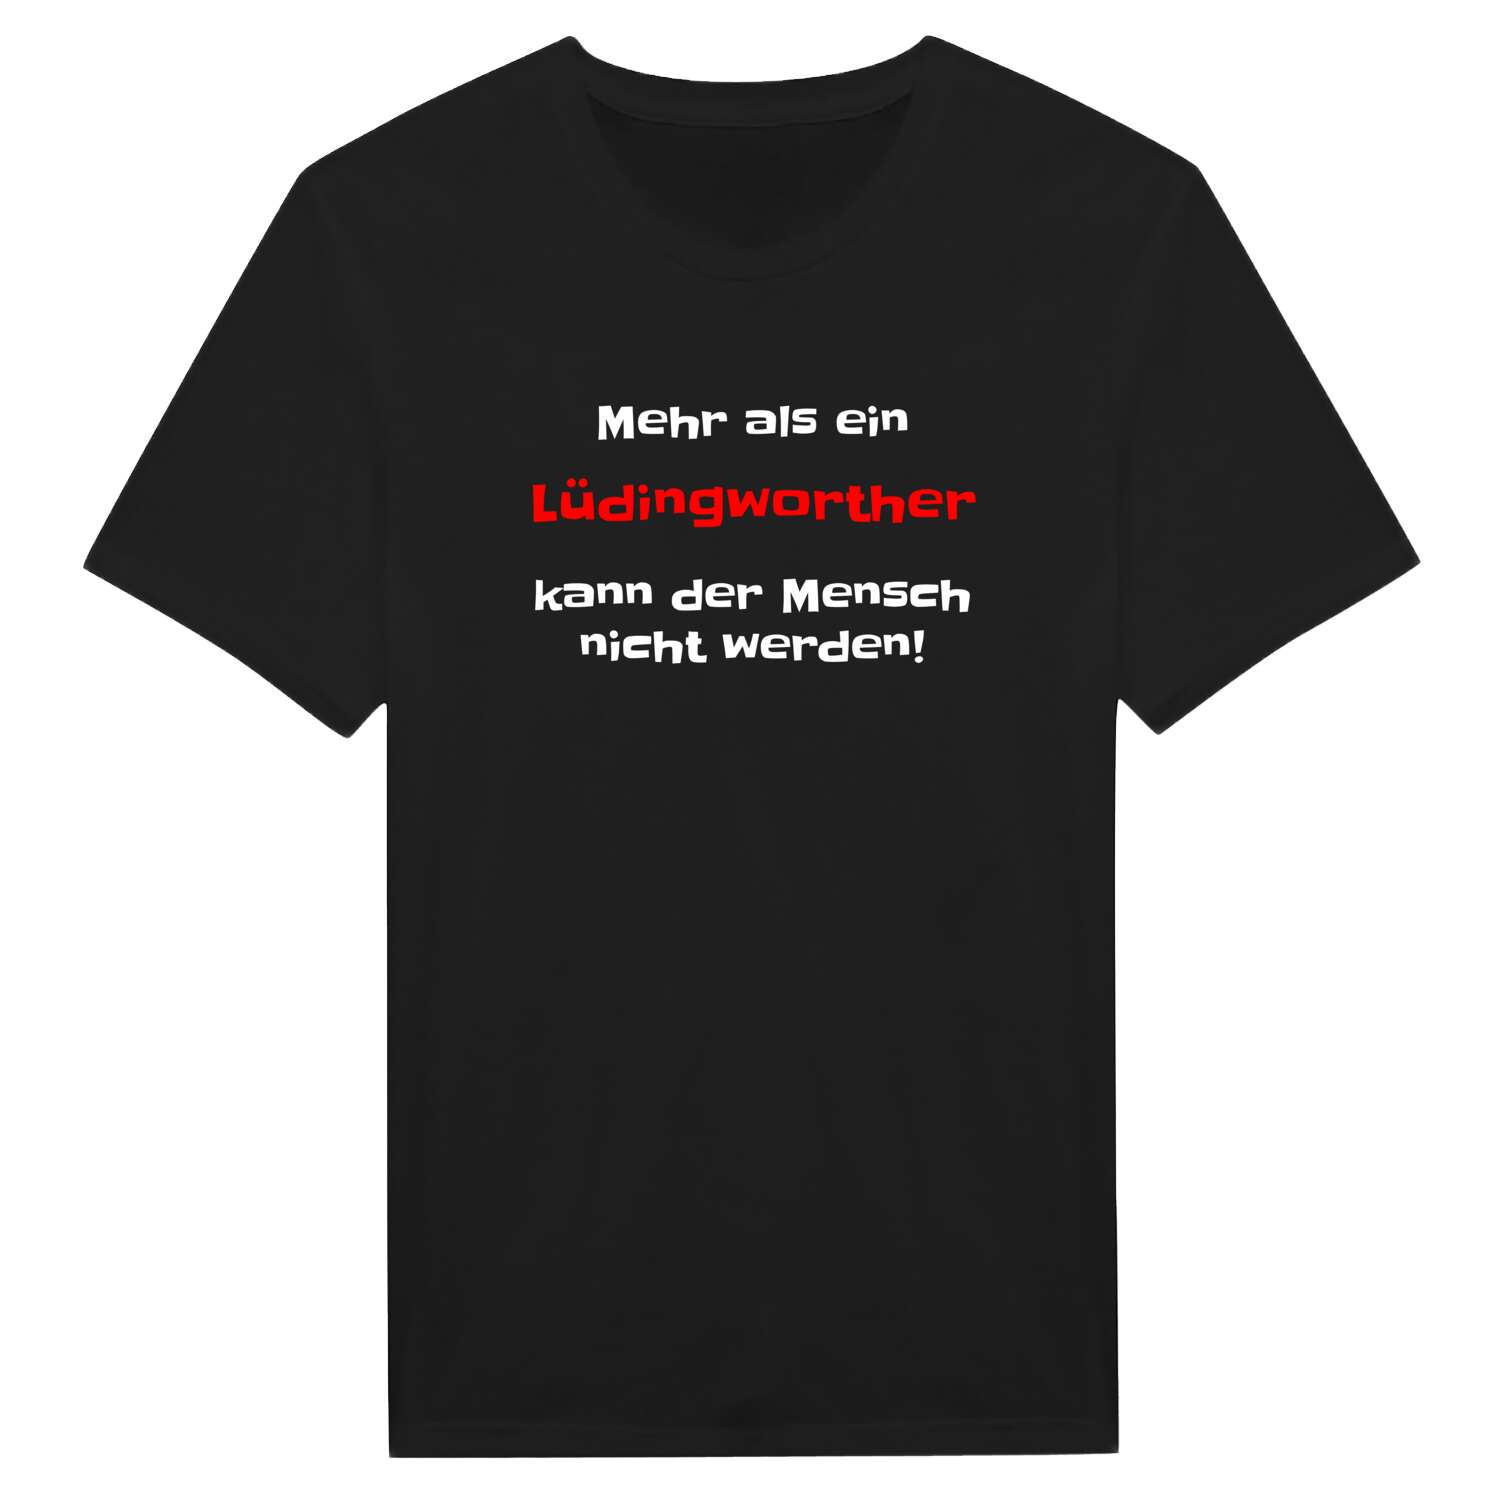 Lüdingworth T-Shirt »Mehr als ein«